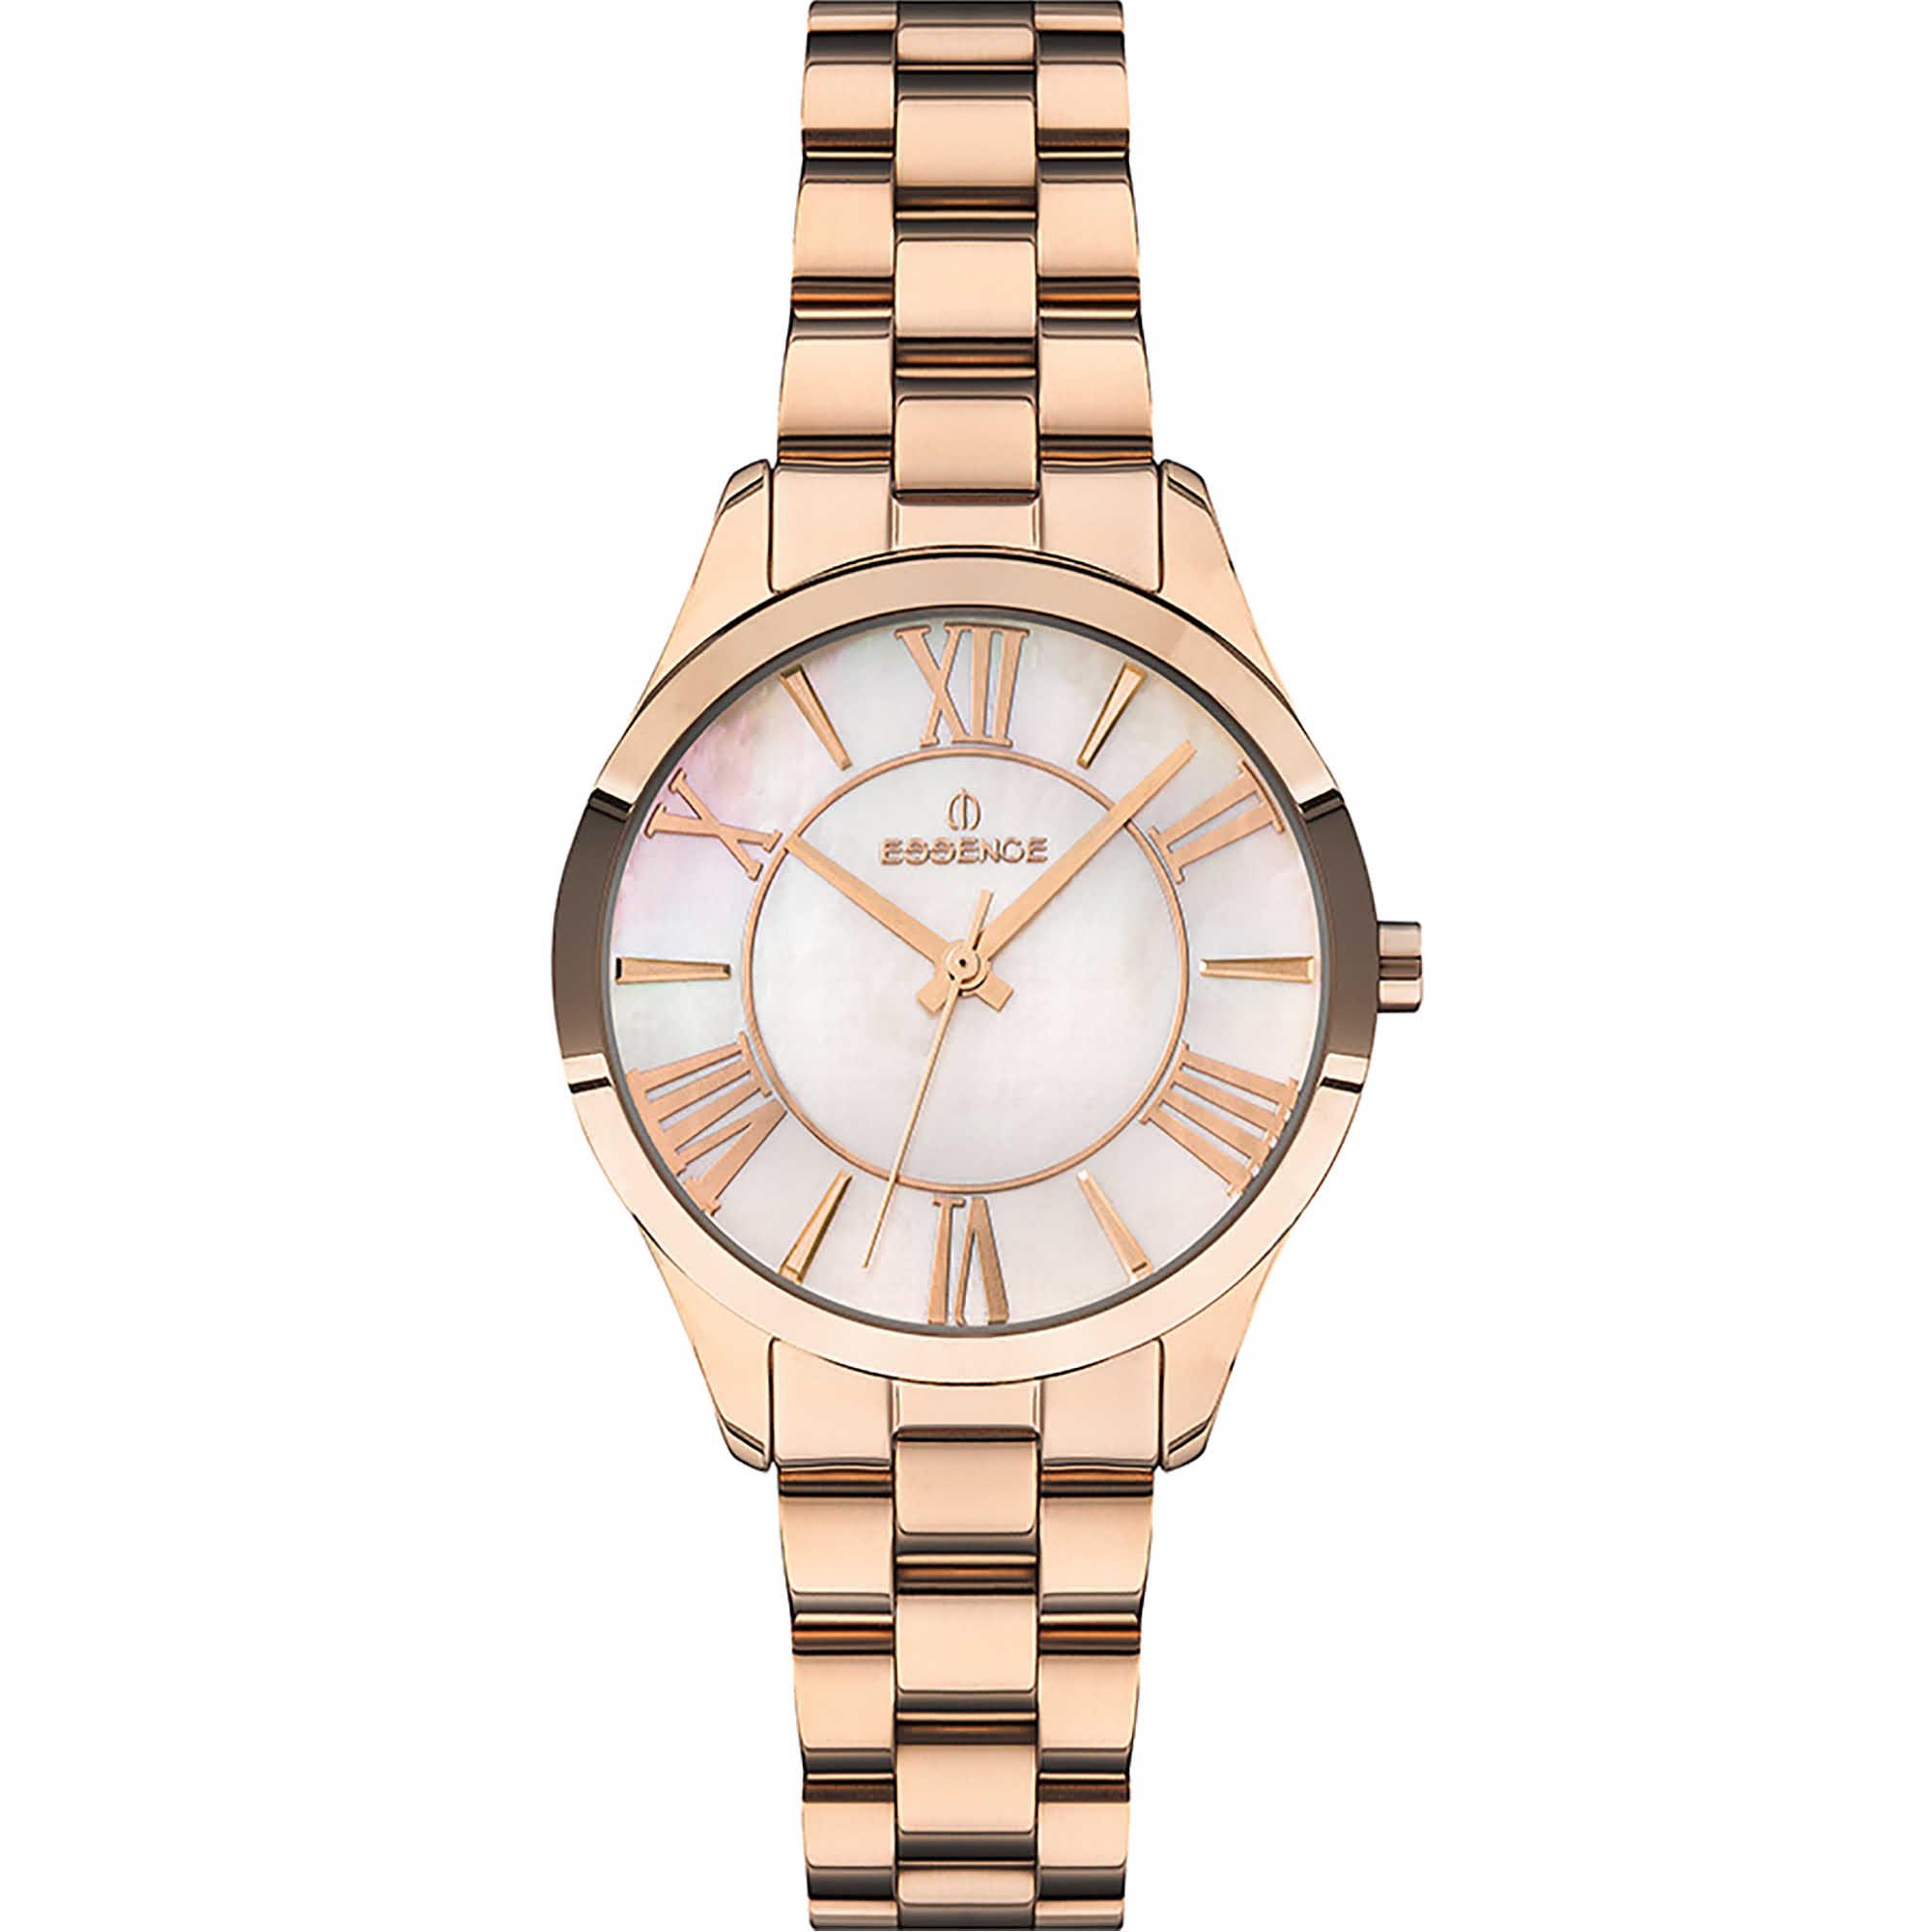 Премиум женские часы Essence – стиль, качество, элегантность